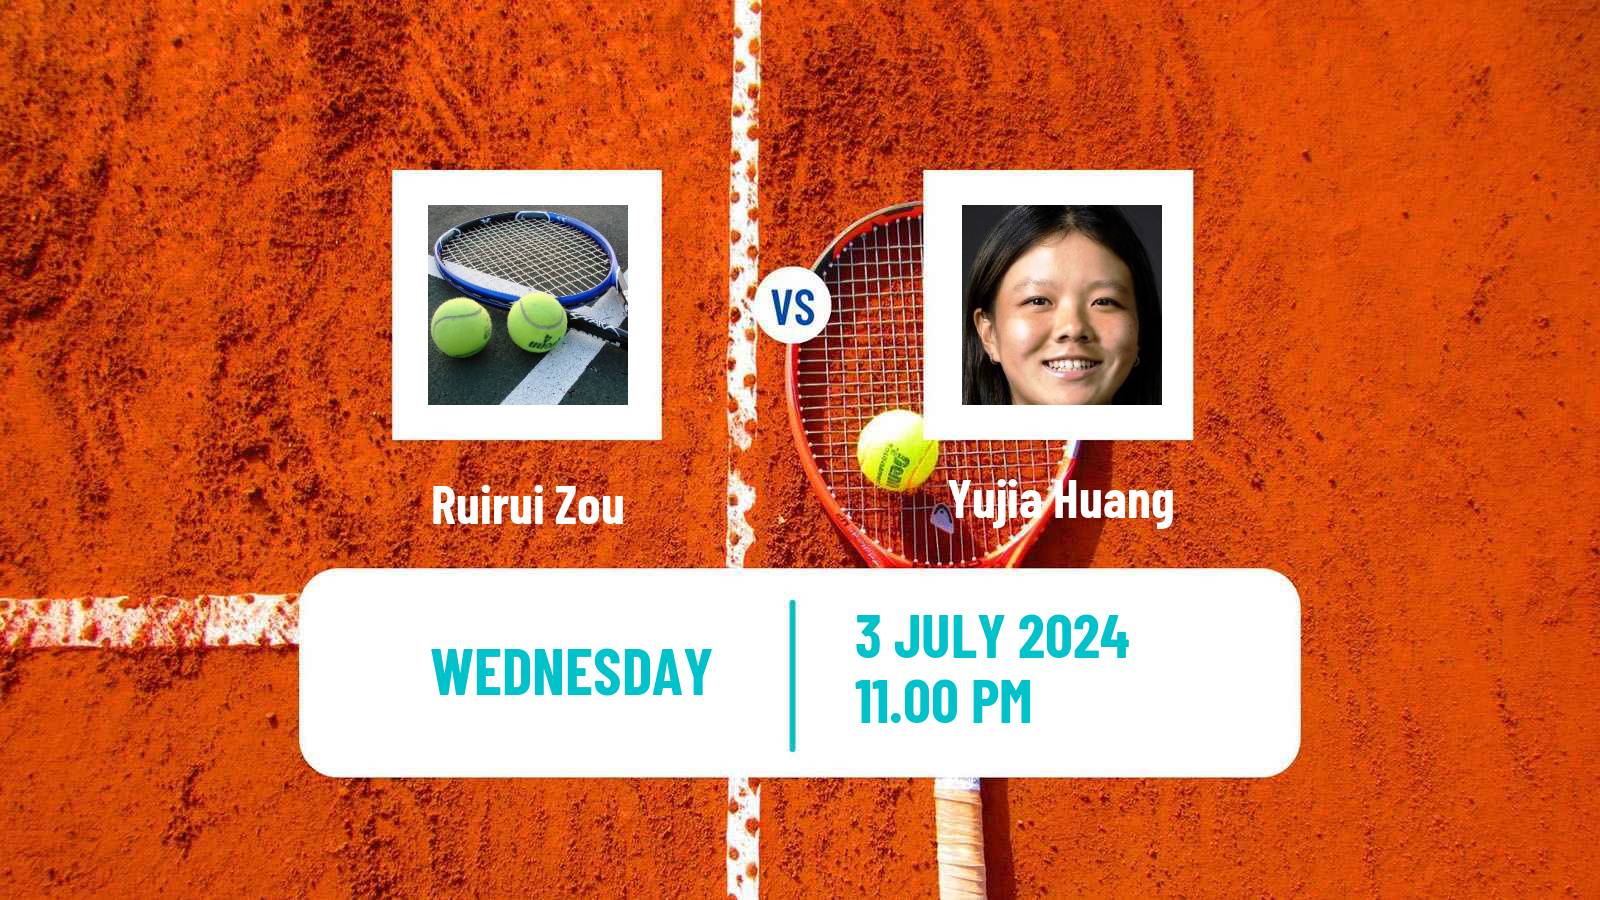 Tennis ITF W15 Tianjin 2 Women Ruirui Zou - Yujia Huang